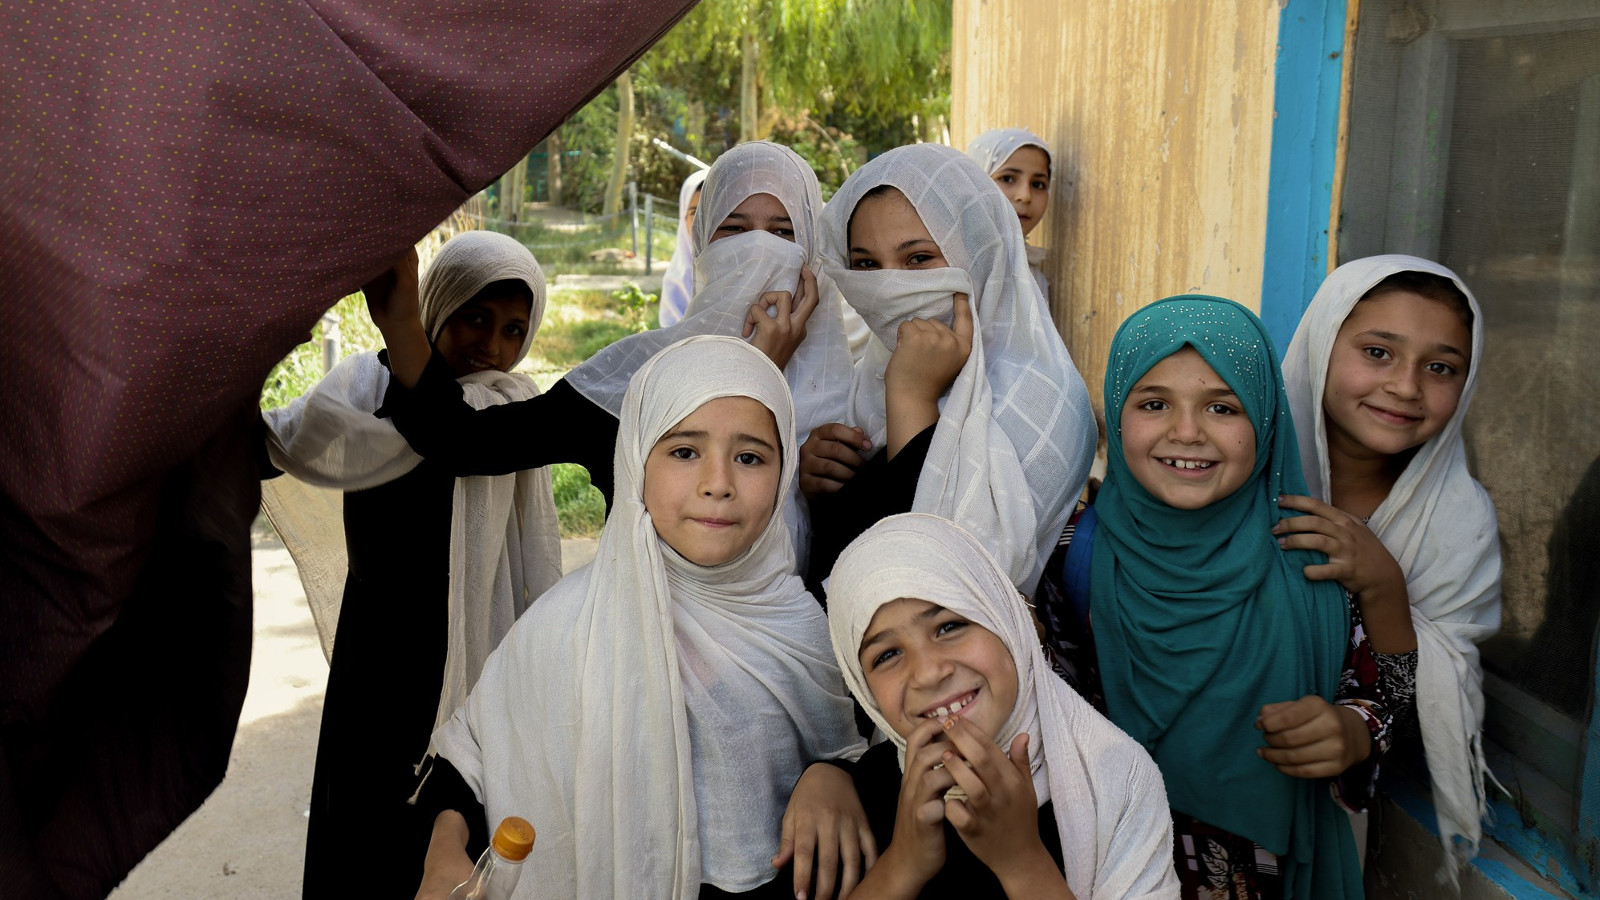 Kuvassa on kahdeksan tyttöä Afganista ja heillä on valkoiset huivit päässään.  Tyttöjen ilmeet ovat iloisia.